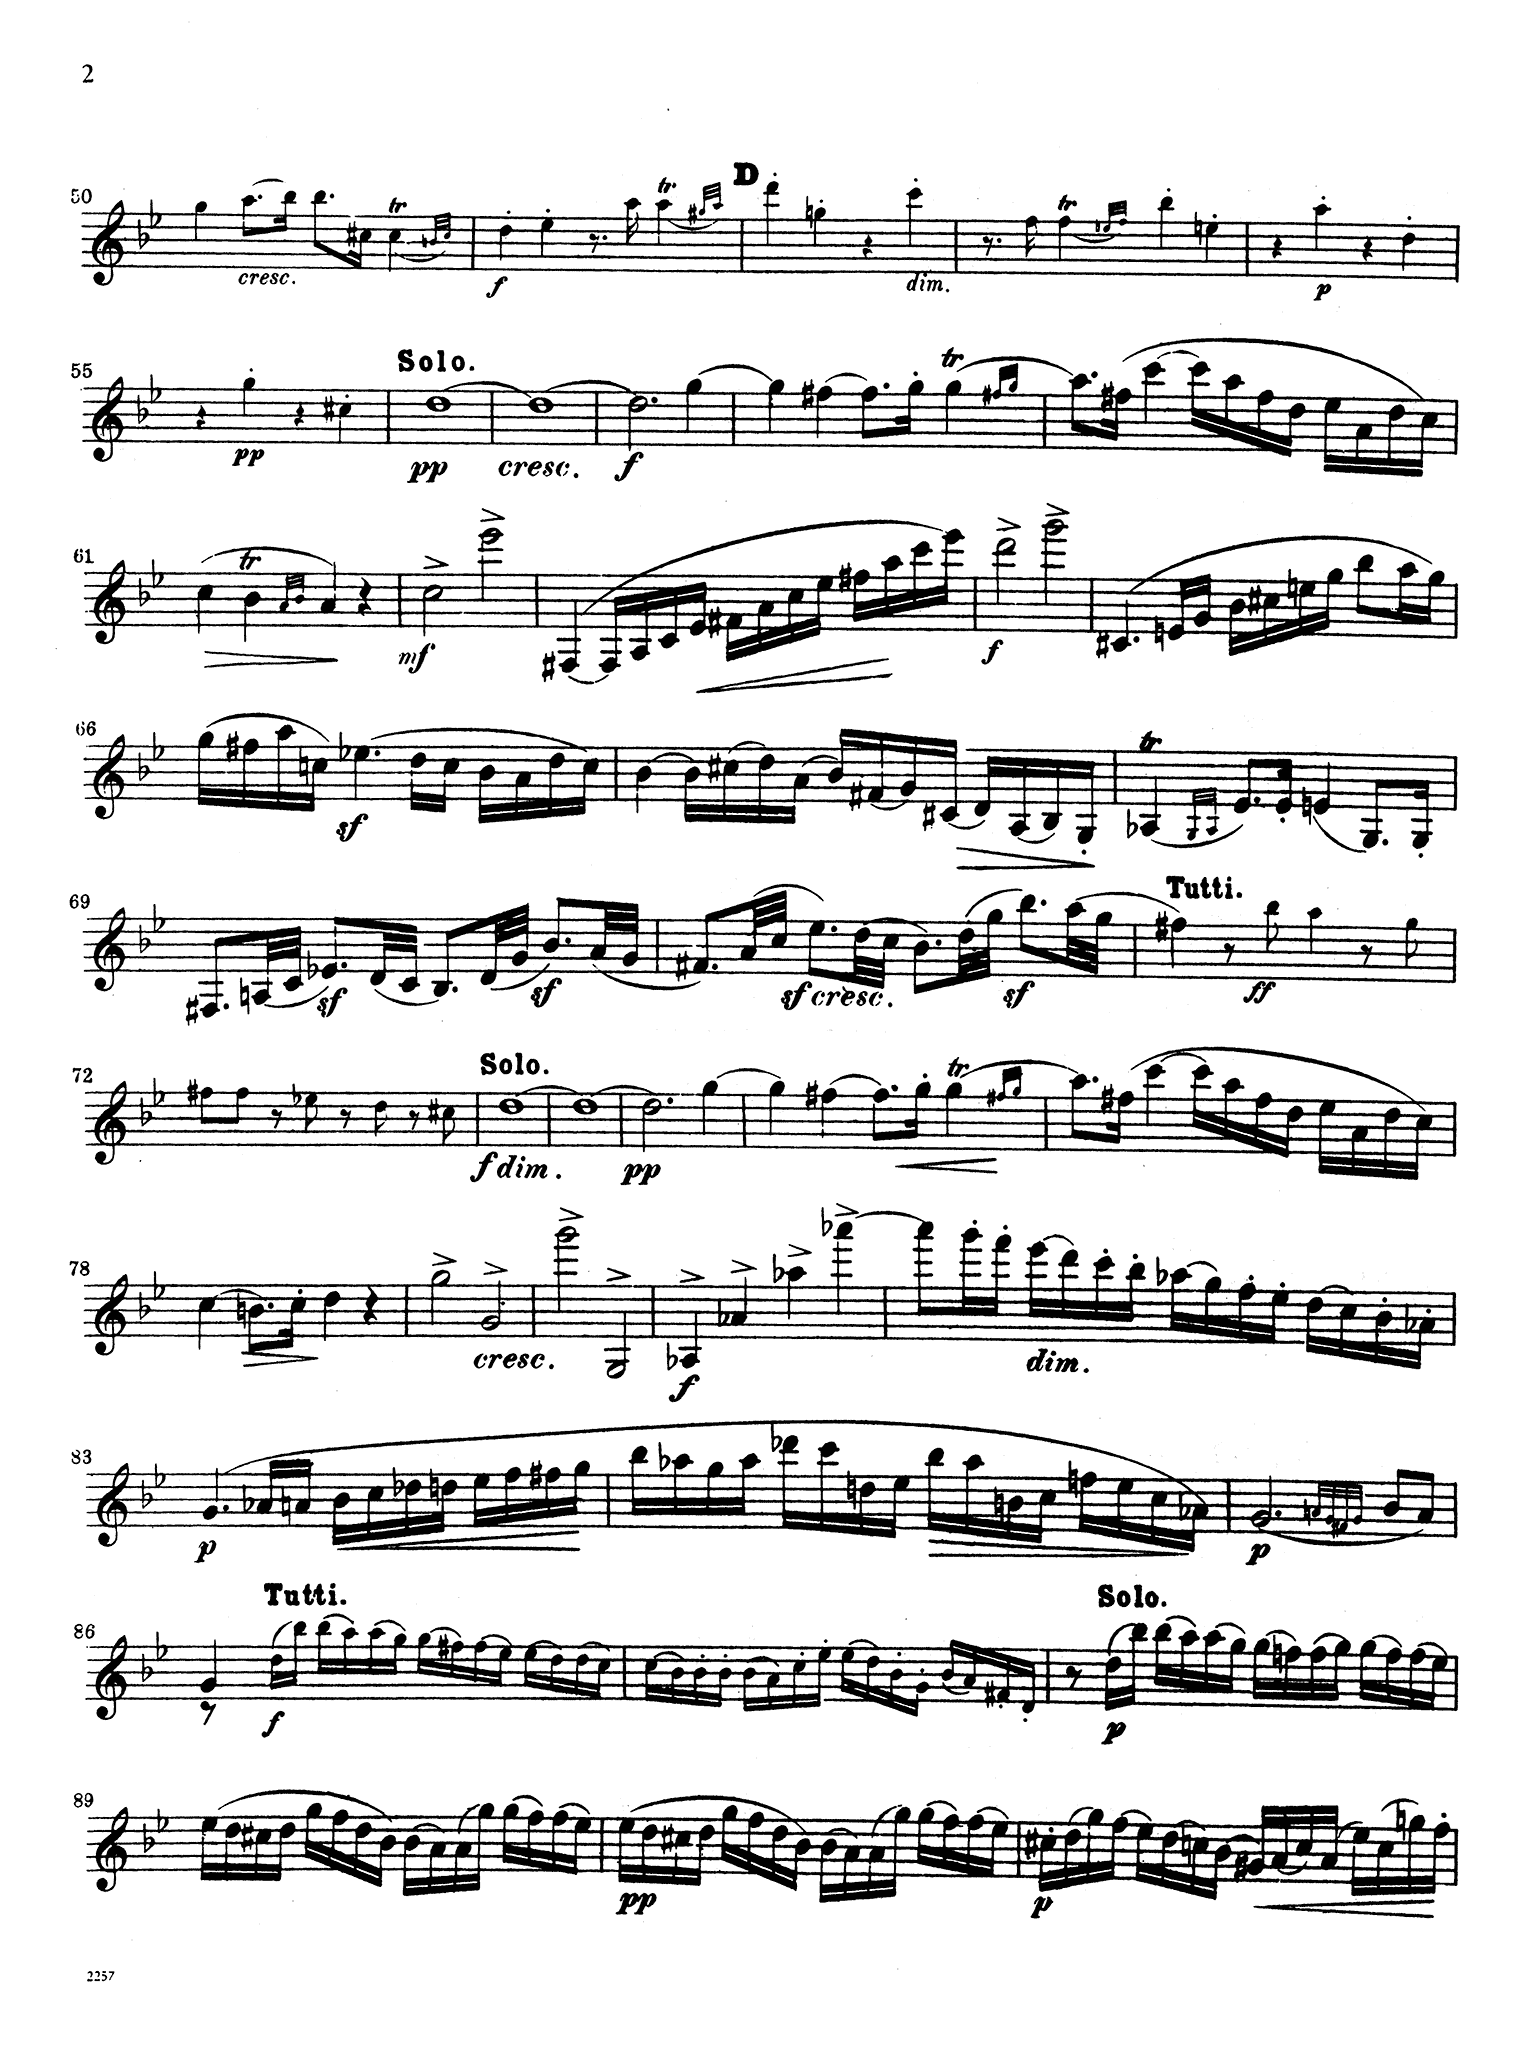 Clarinet Concerto No. 3 in F Minor, WoO 19 Clarinet part